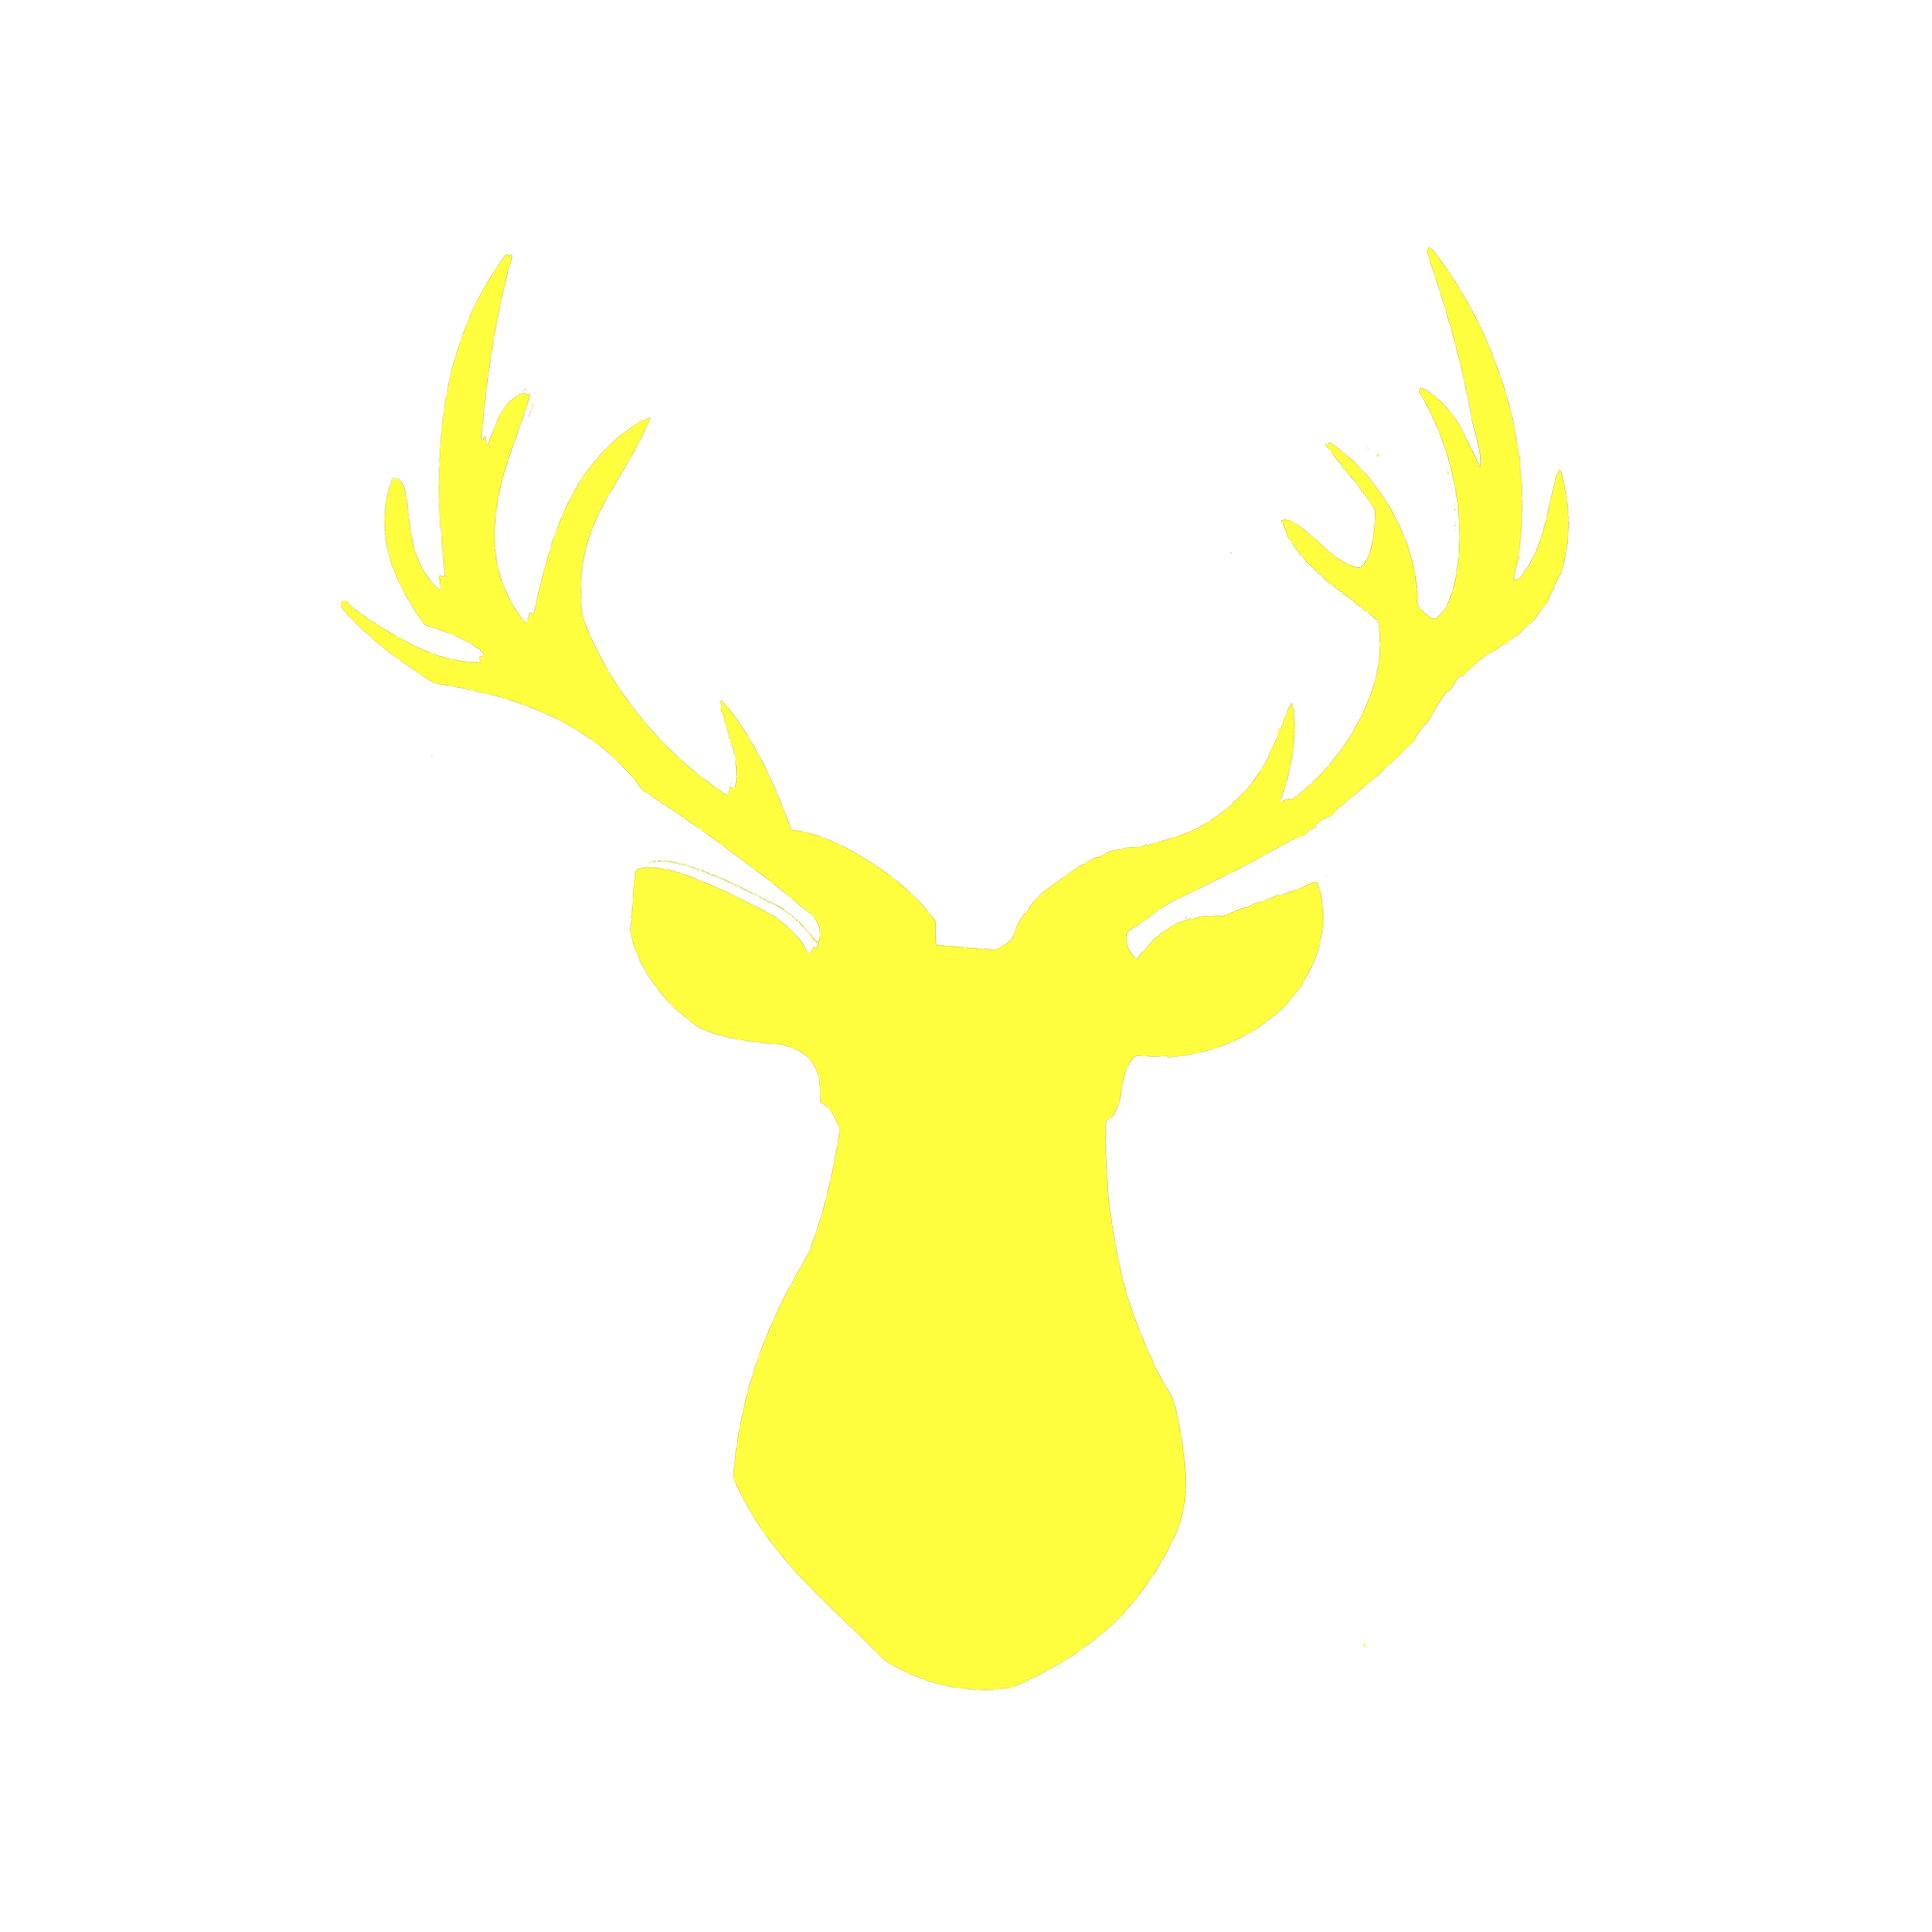 Deer - Wall Art